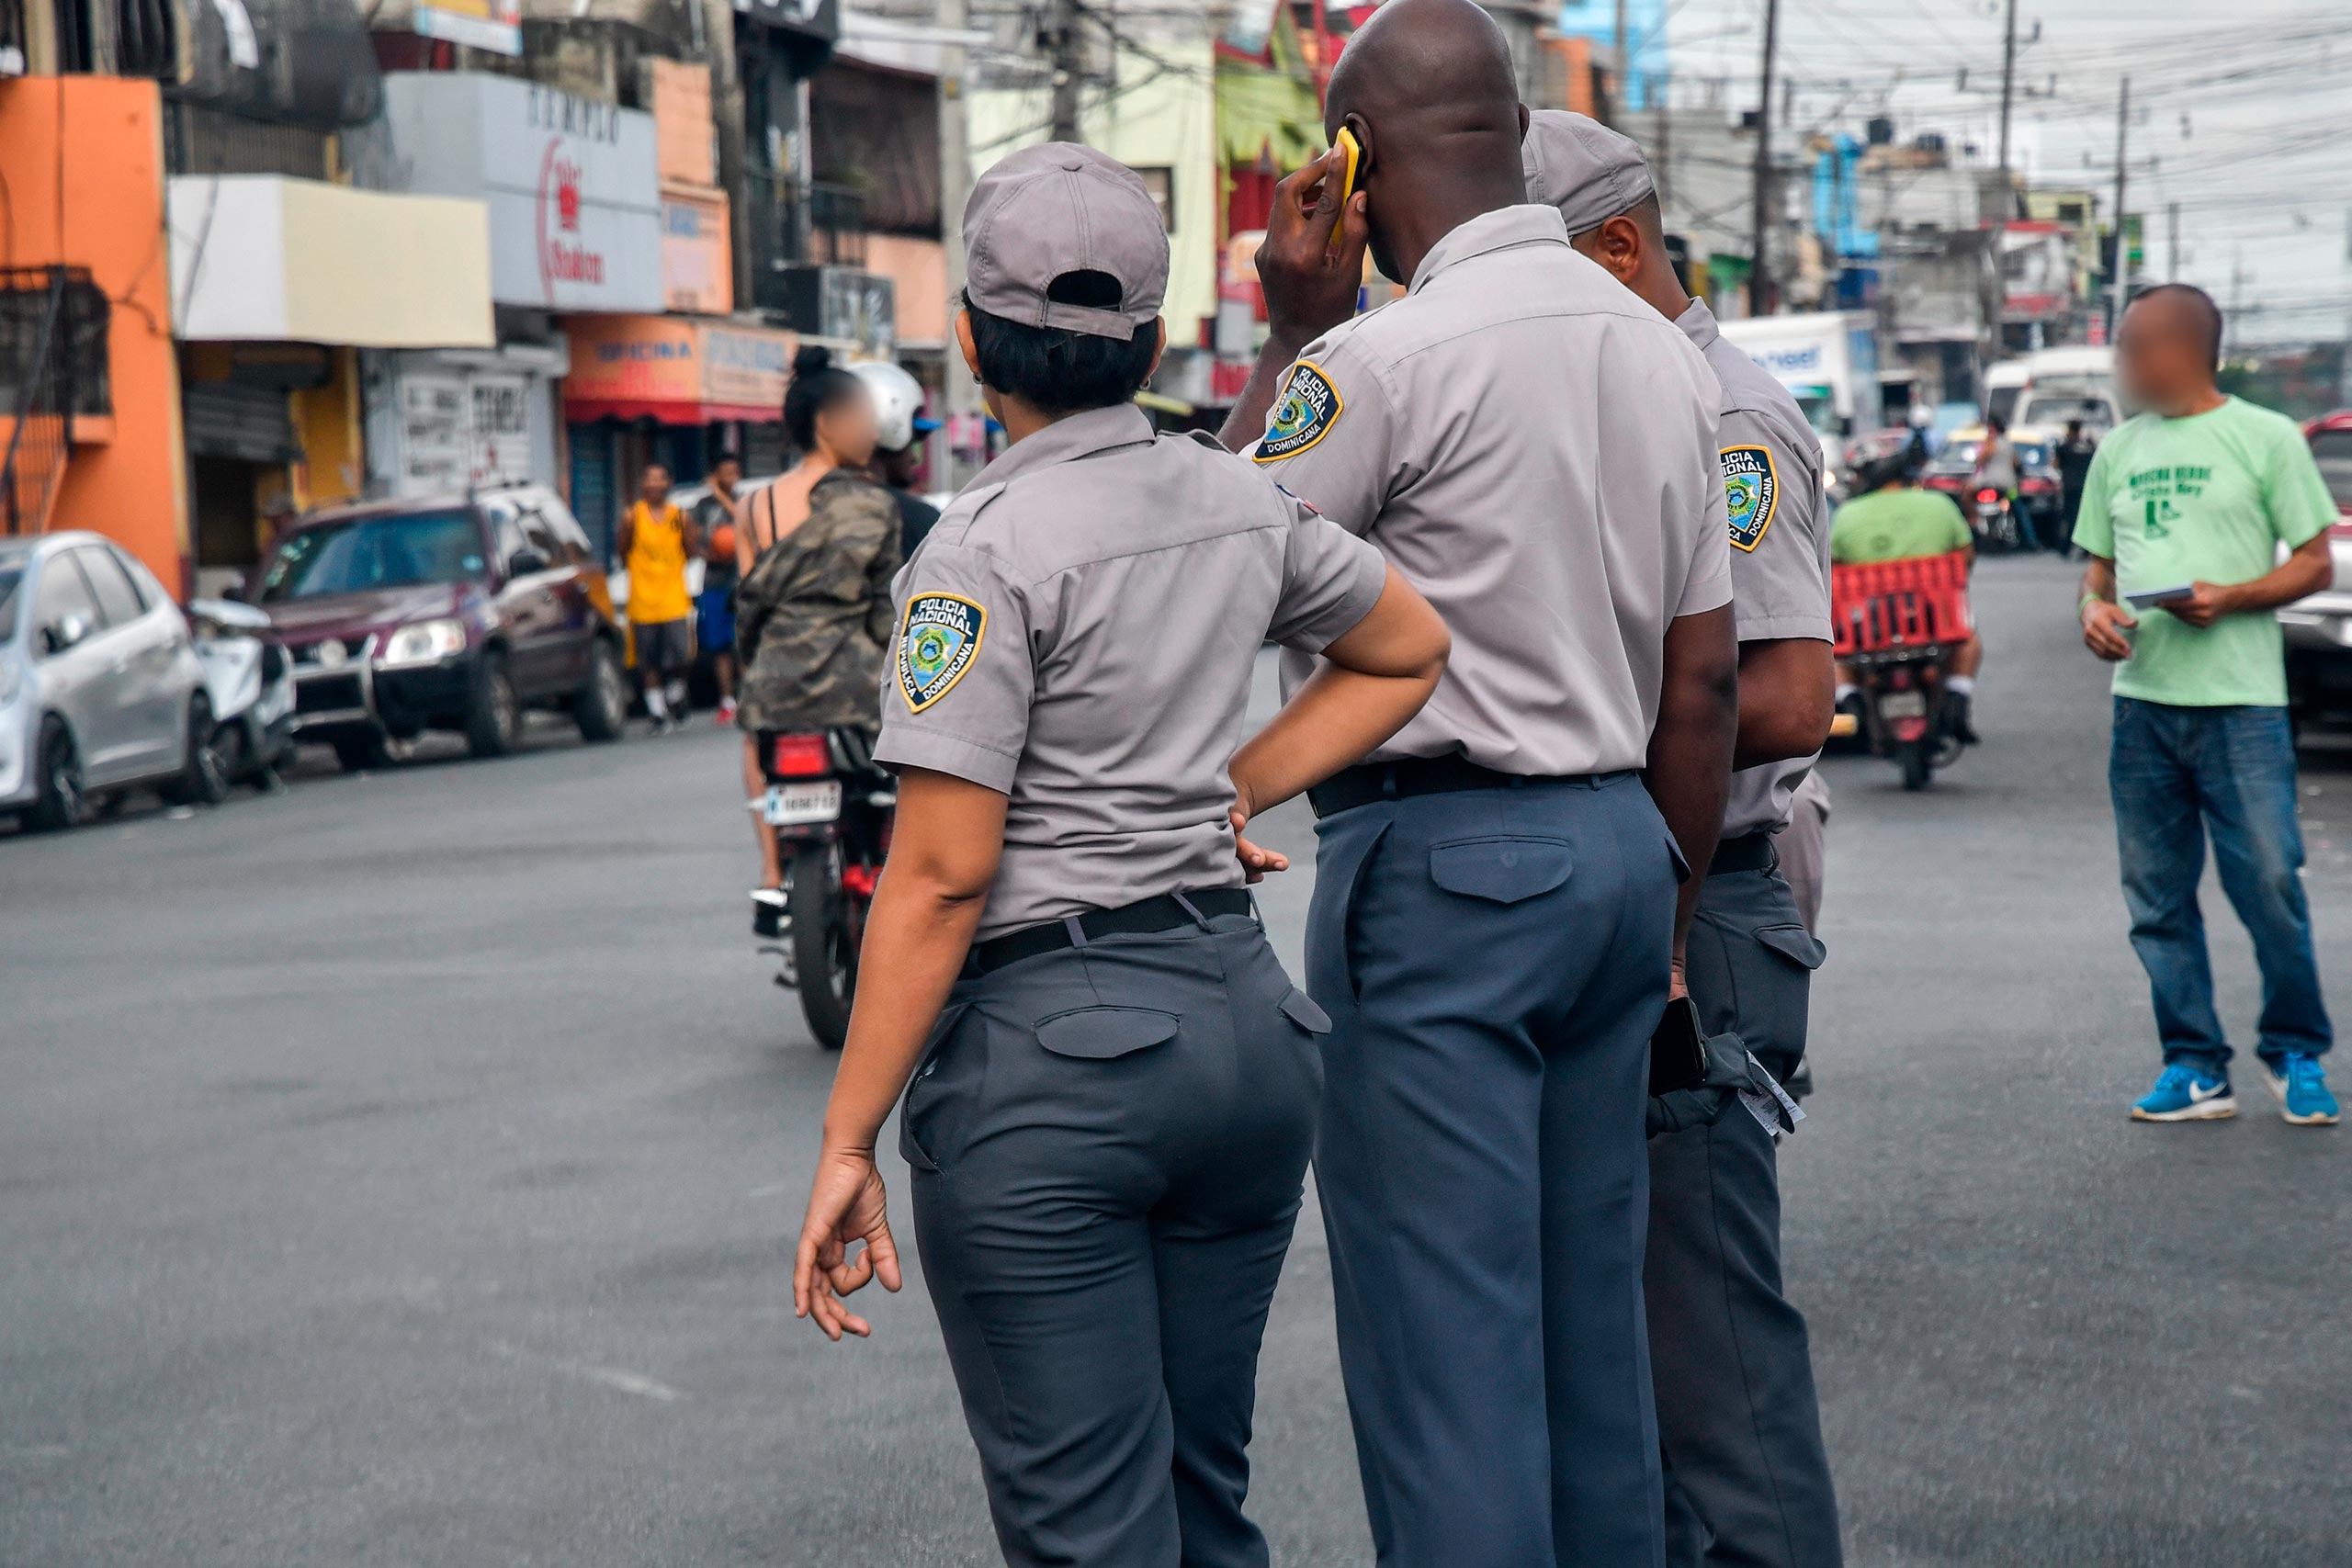 La Policía Nacional dominicana intercambia experiencias con la de Brasilia